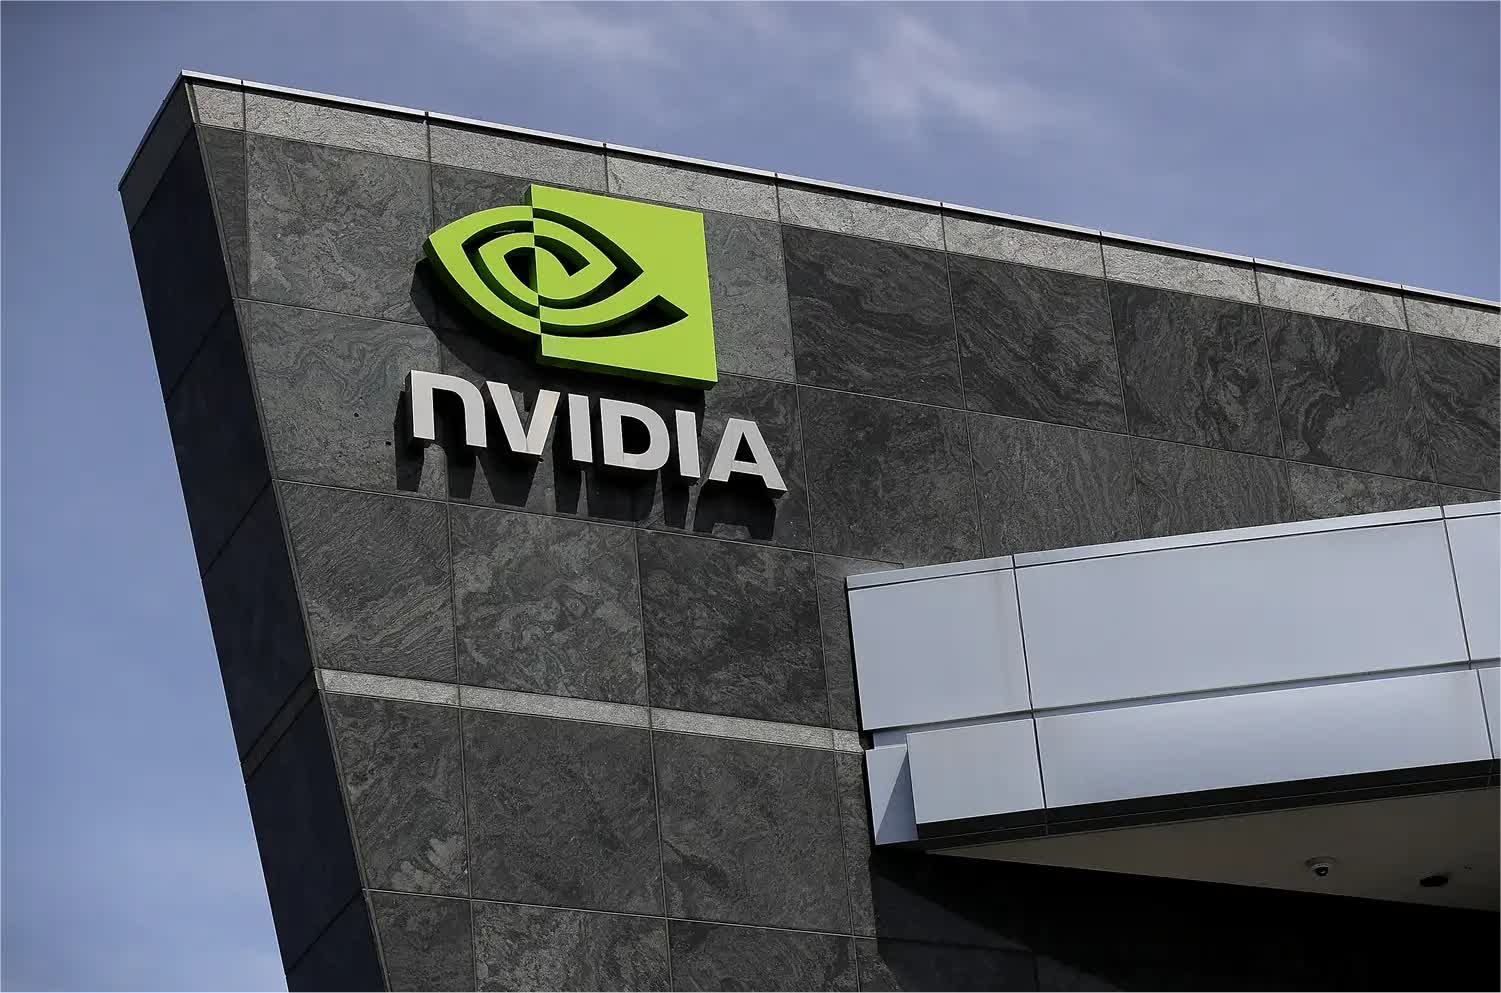 La creciente capitalización de mercado de Nvidia se acerca a la de Amazon y Alphabet, impulsada por la creciente demanda de IA